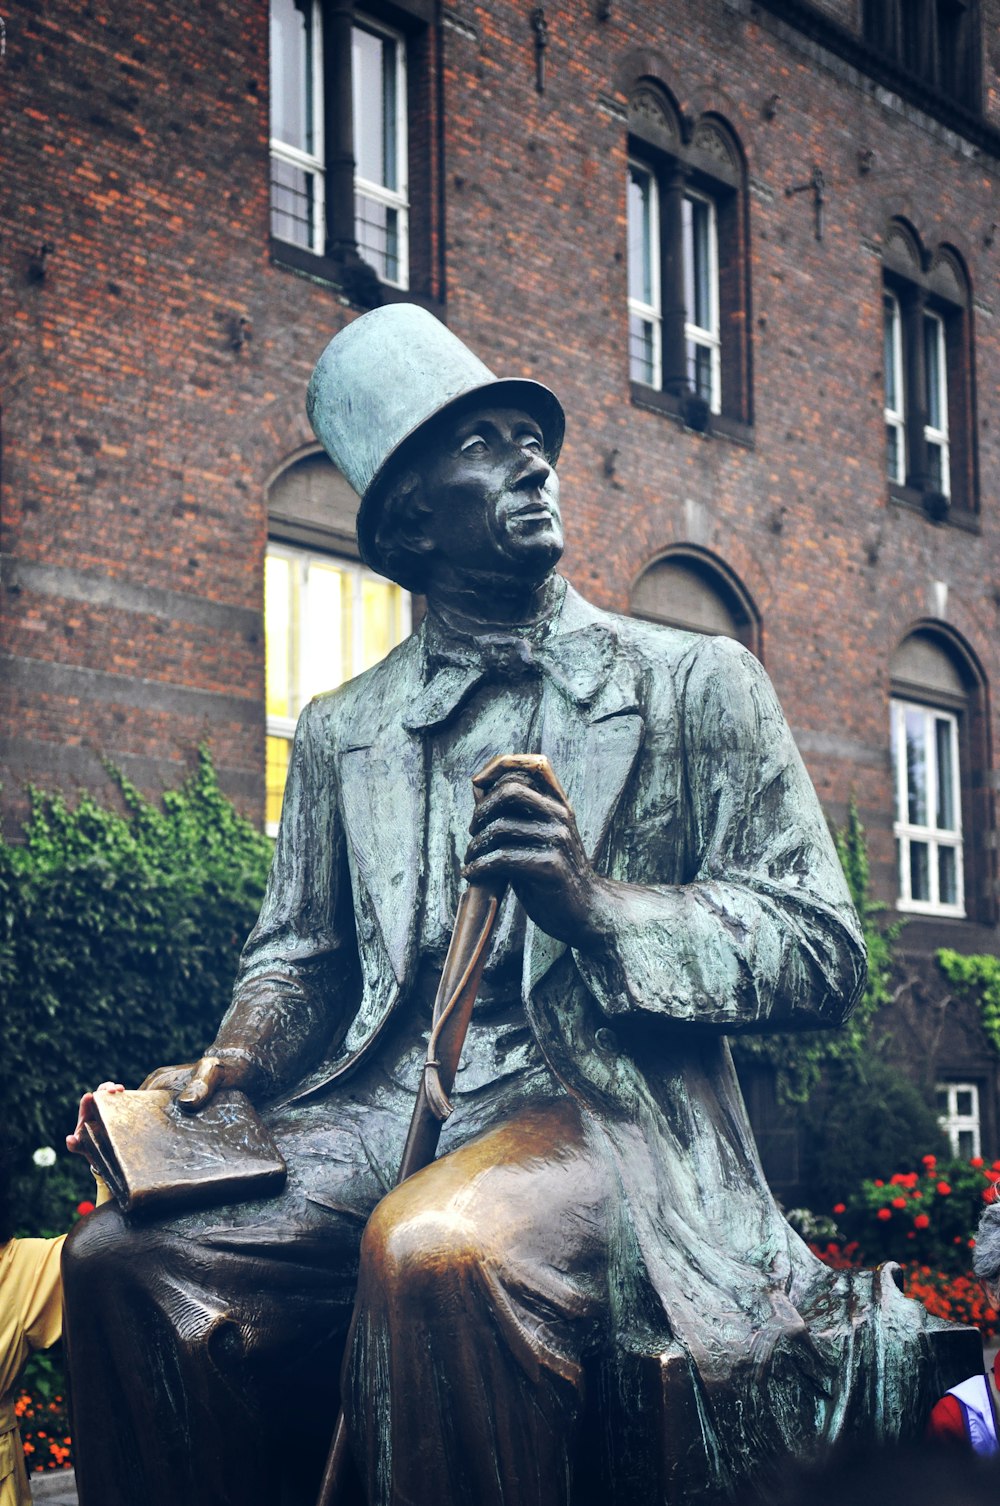 man in hat statue brown brick building daytime photo Free København v Image on Unsplash